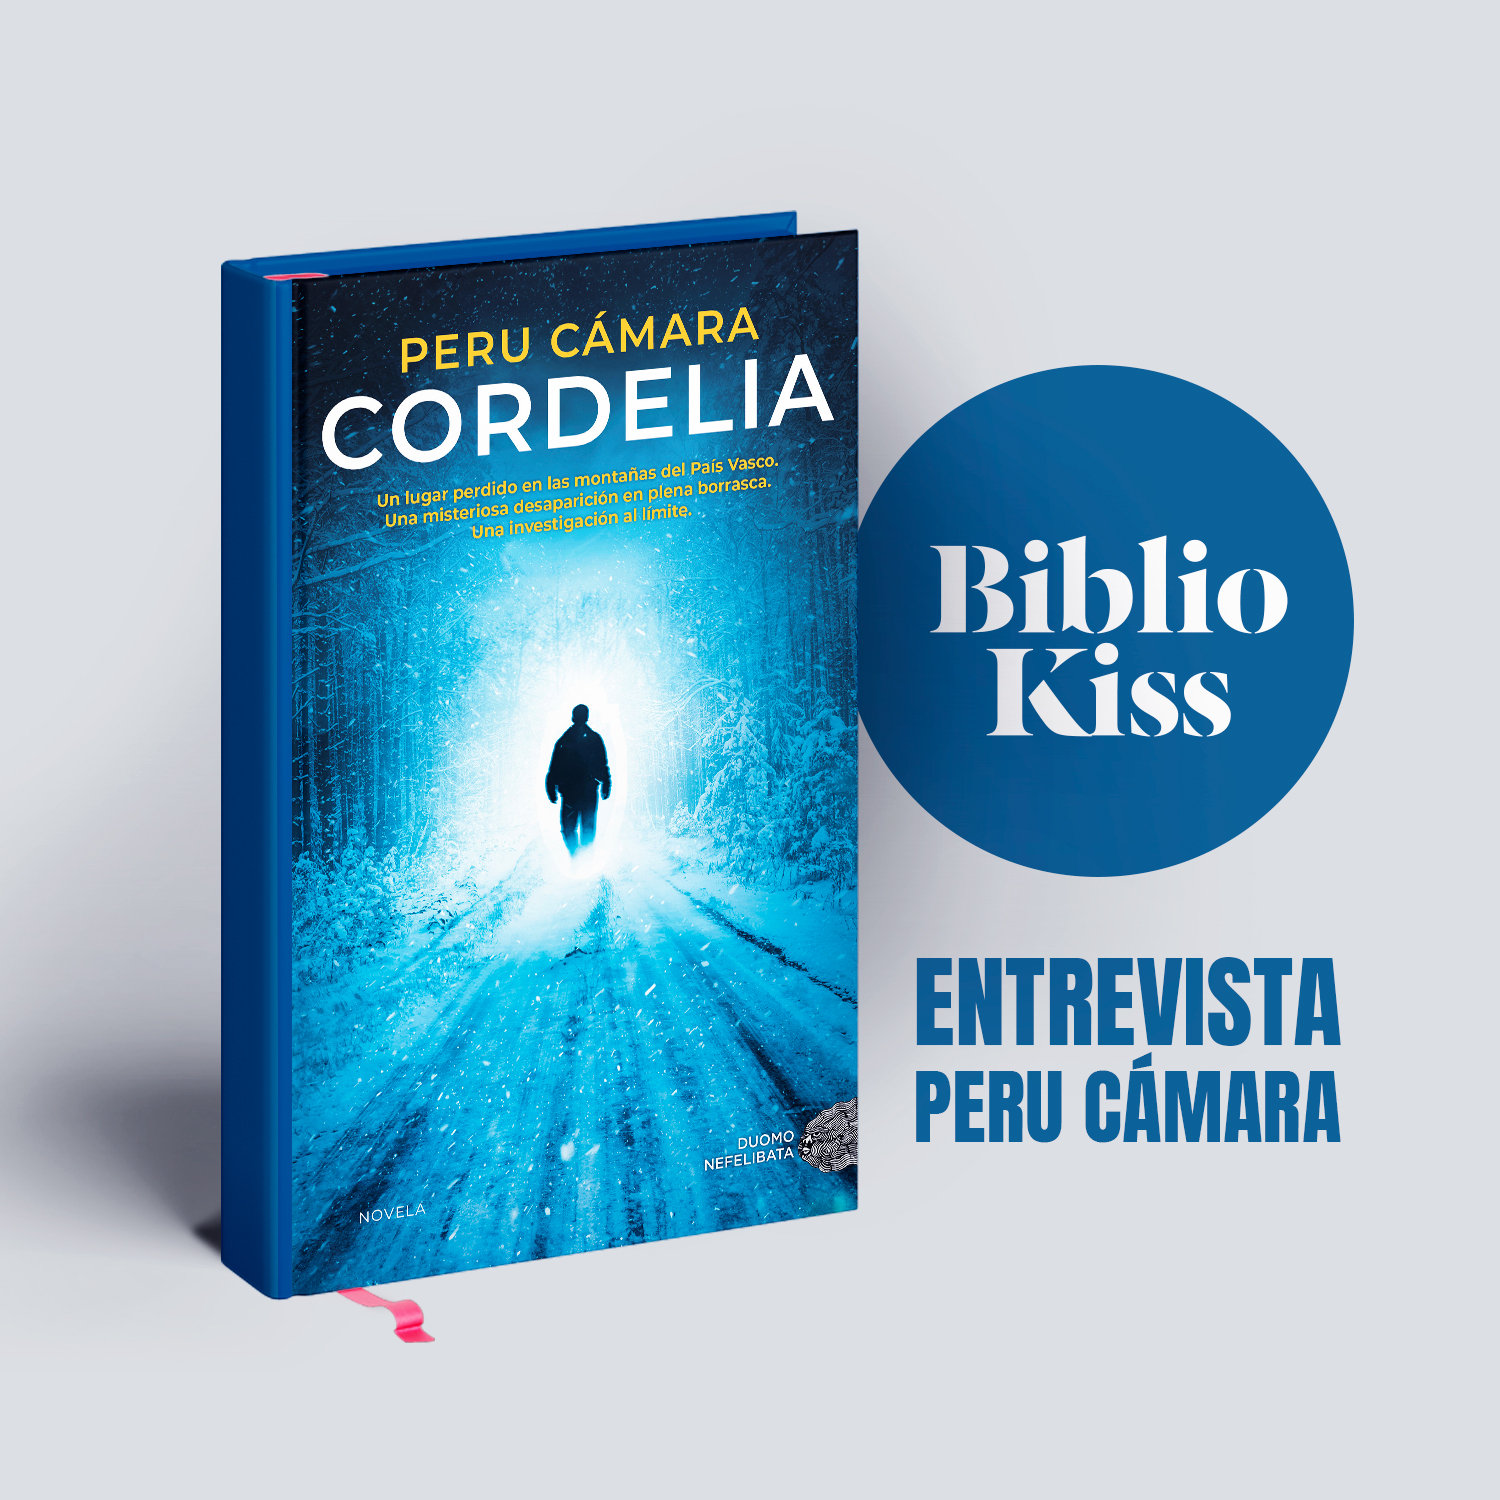 Peru Cámara regresa a las librerías con “Cordelia”